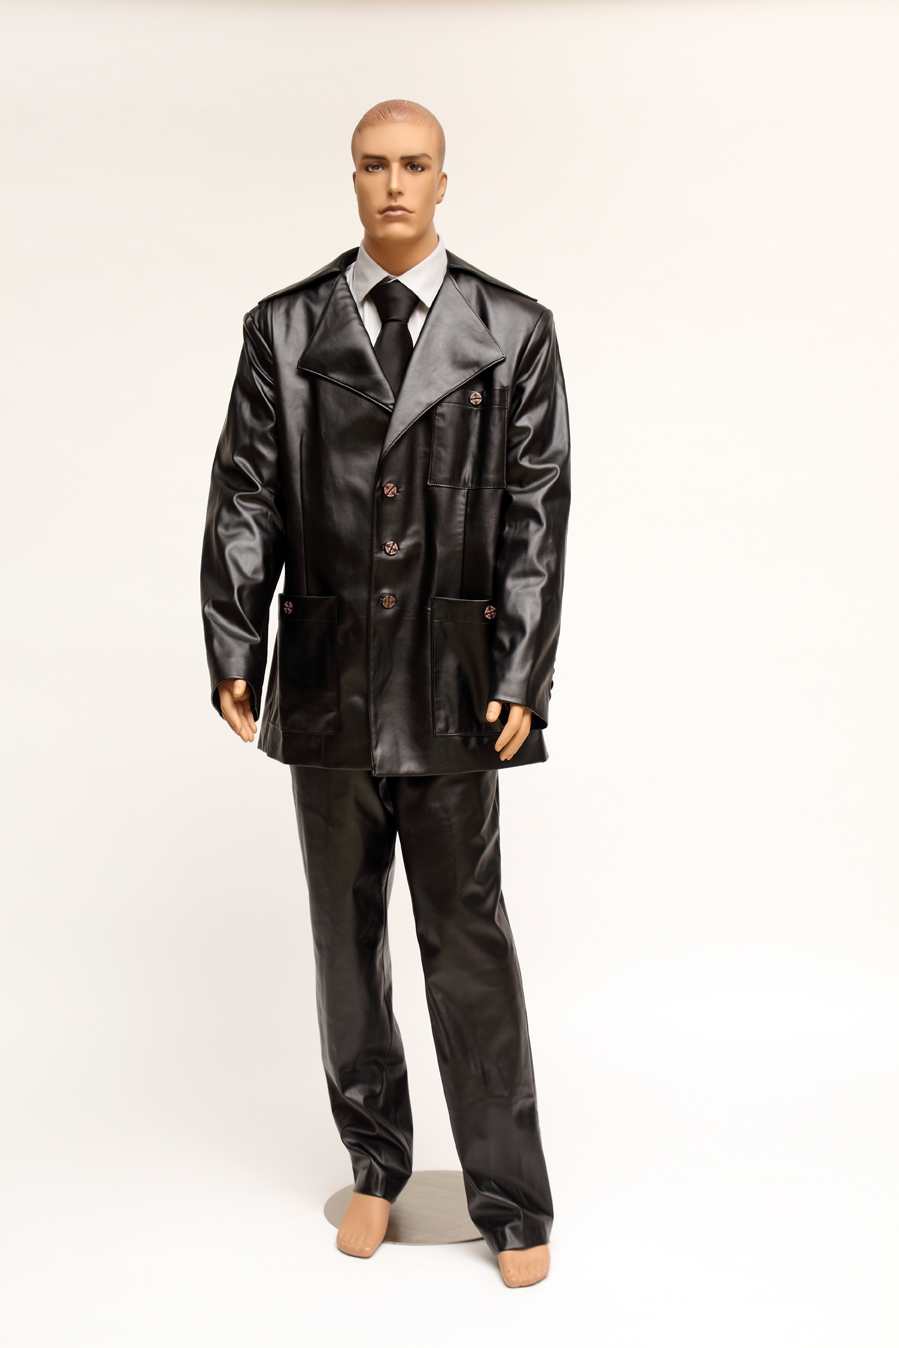 Leather Black Suit | vlr.eng.br